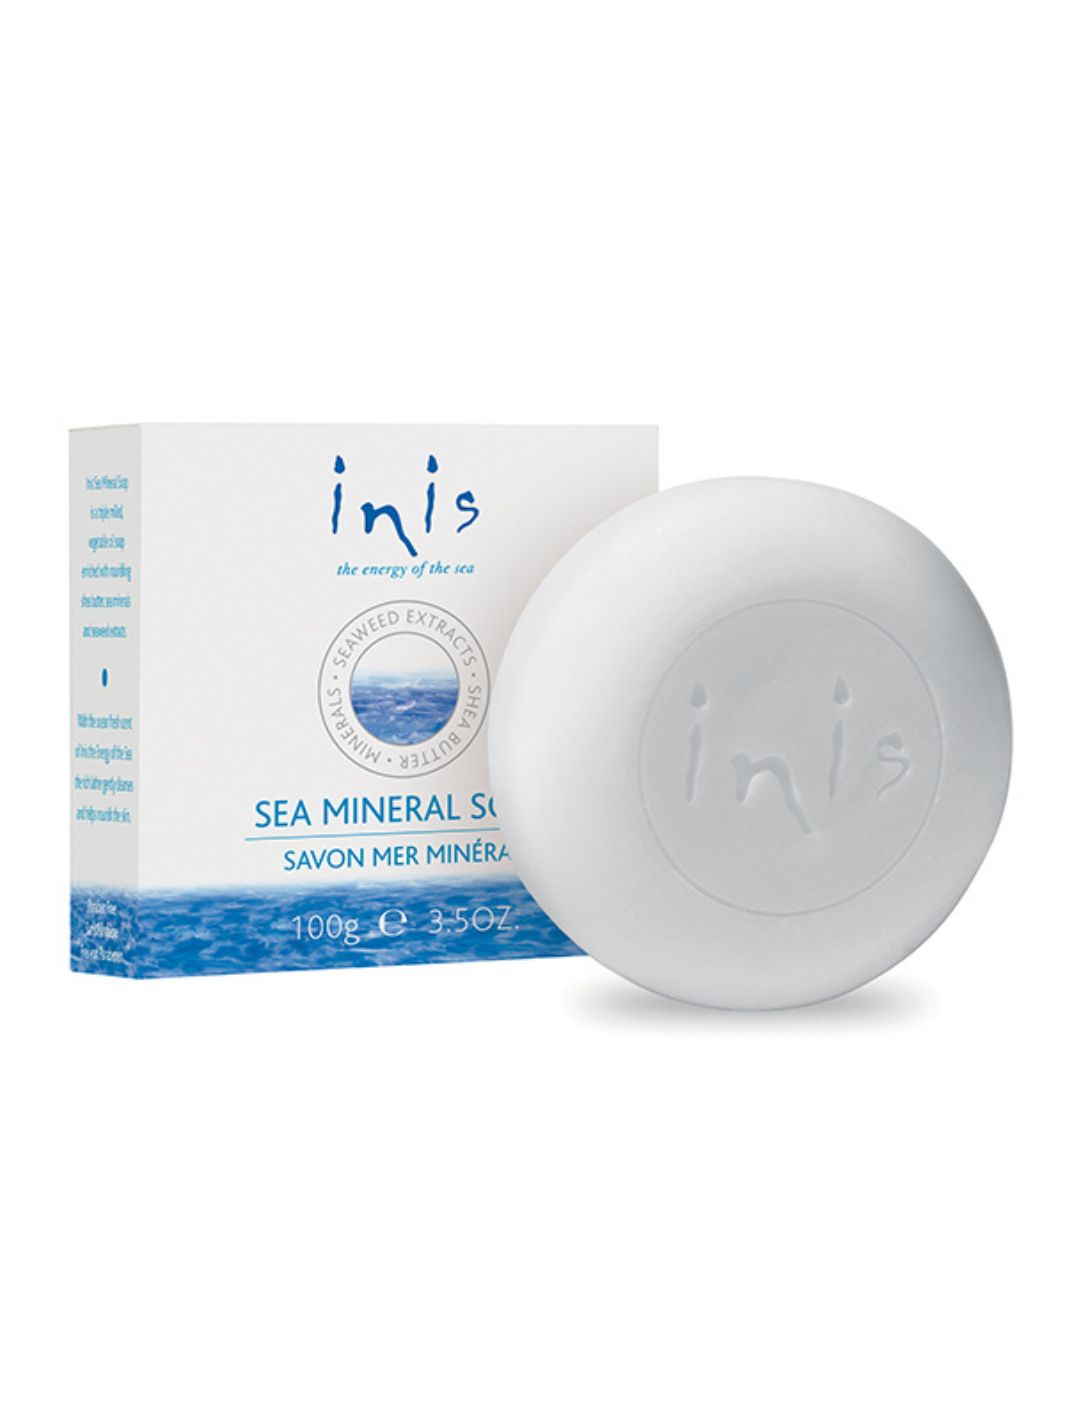 Sea Mineral Soap